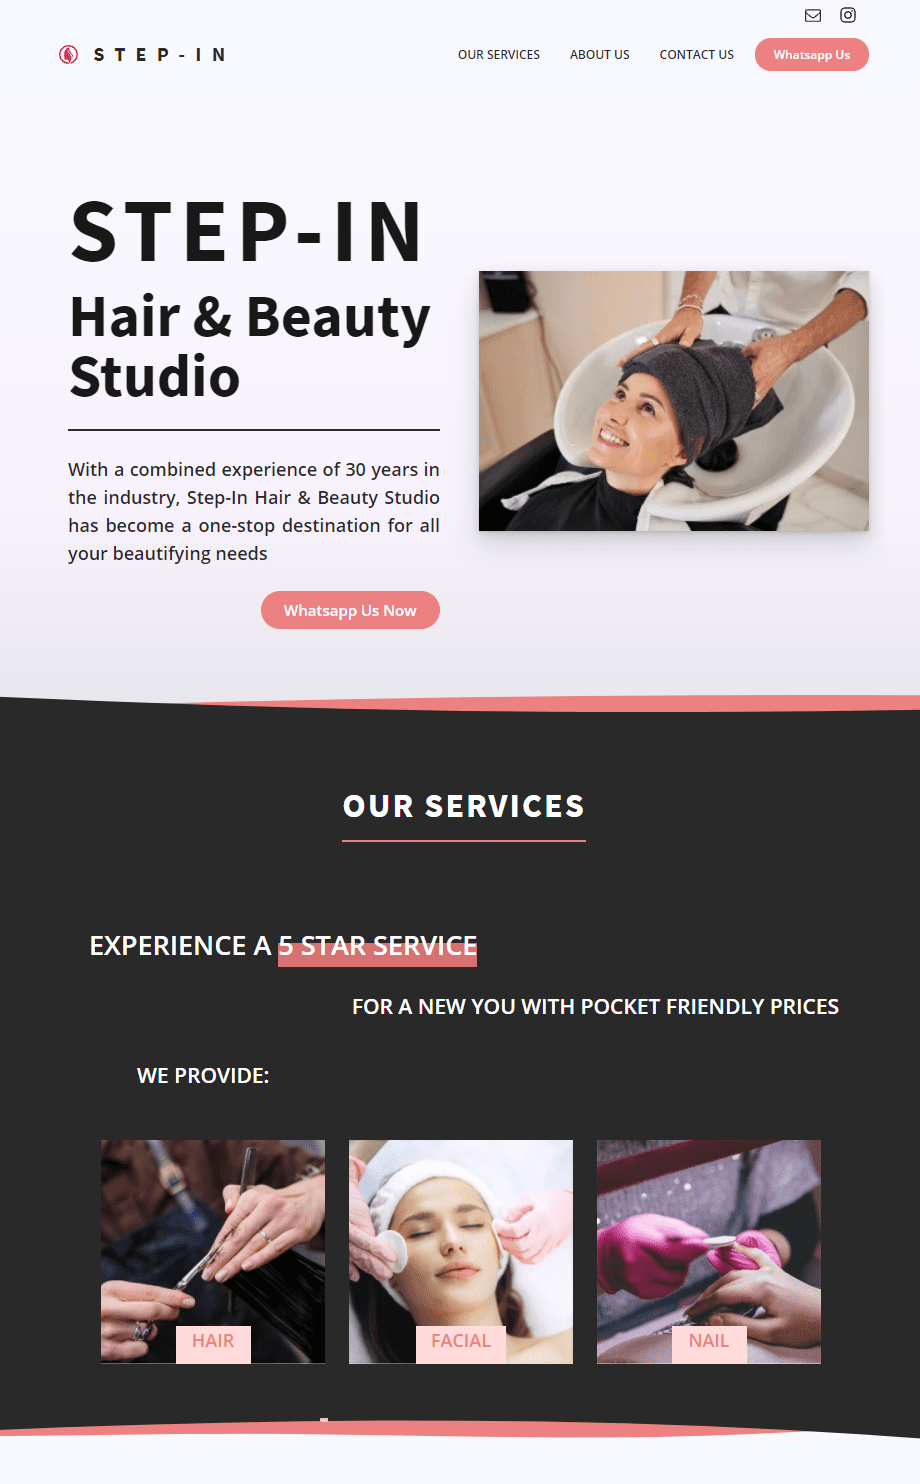 Step-In Hair & Beauty Studio Website